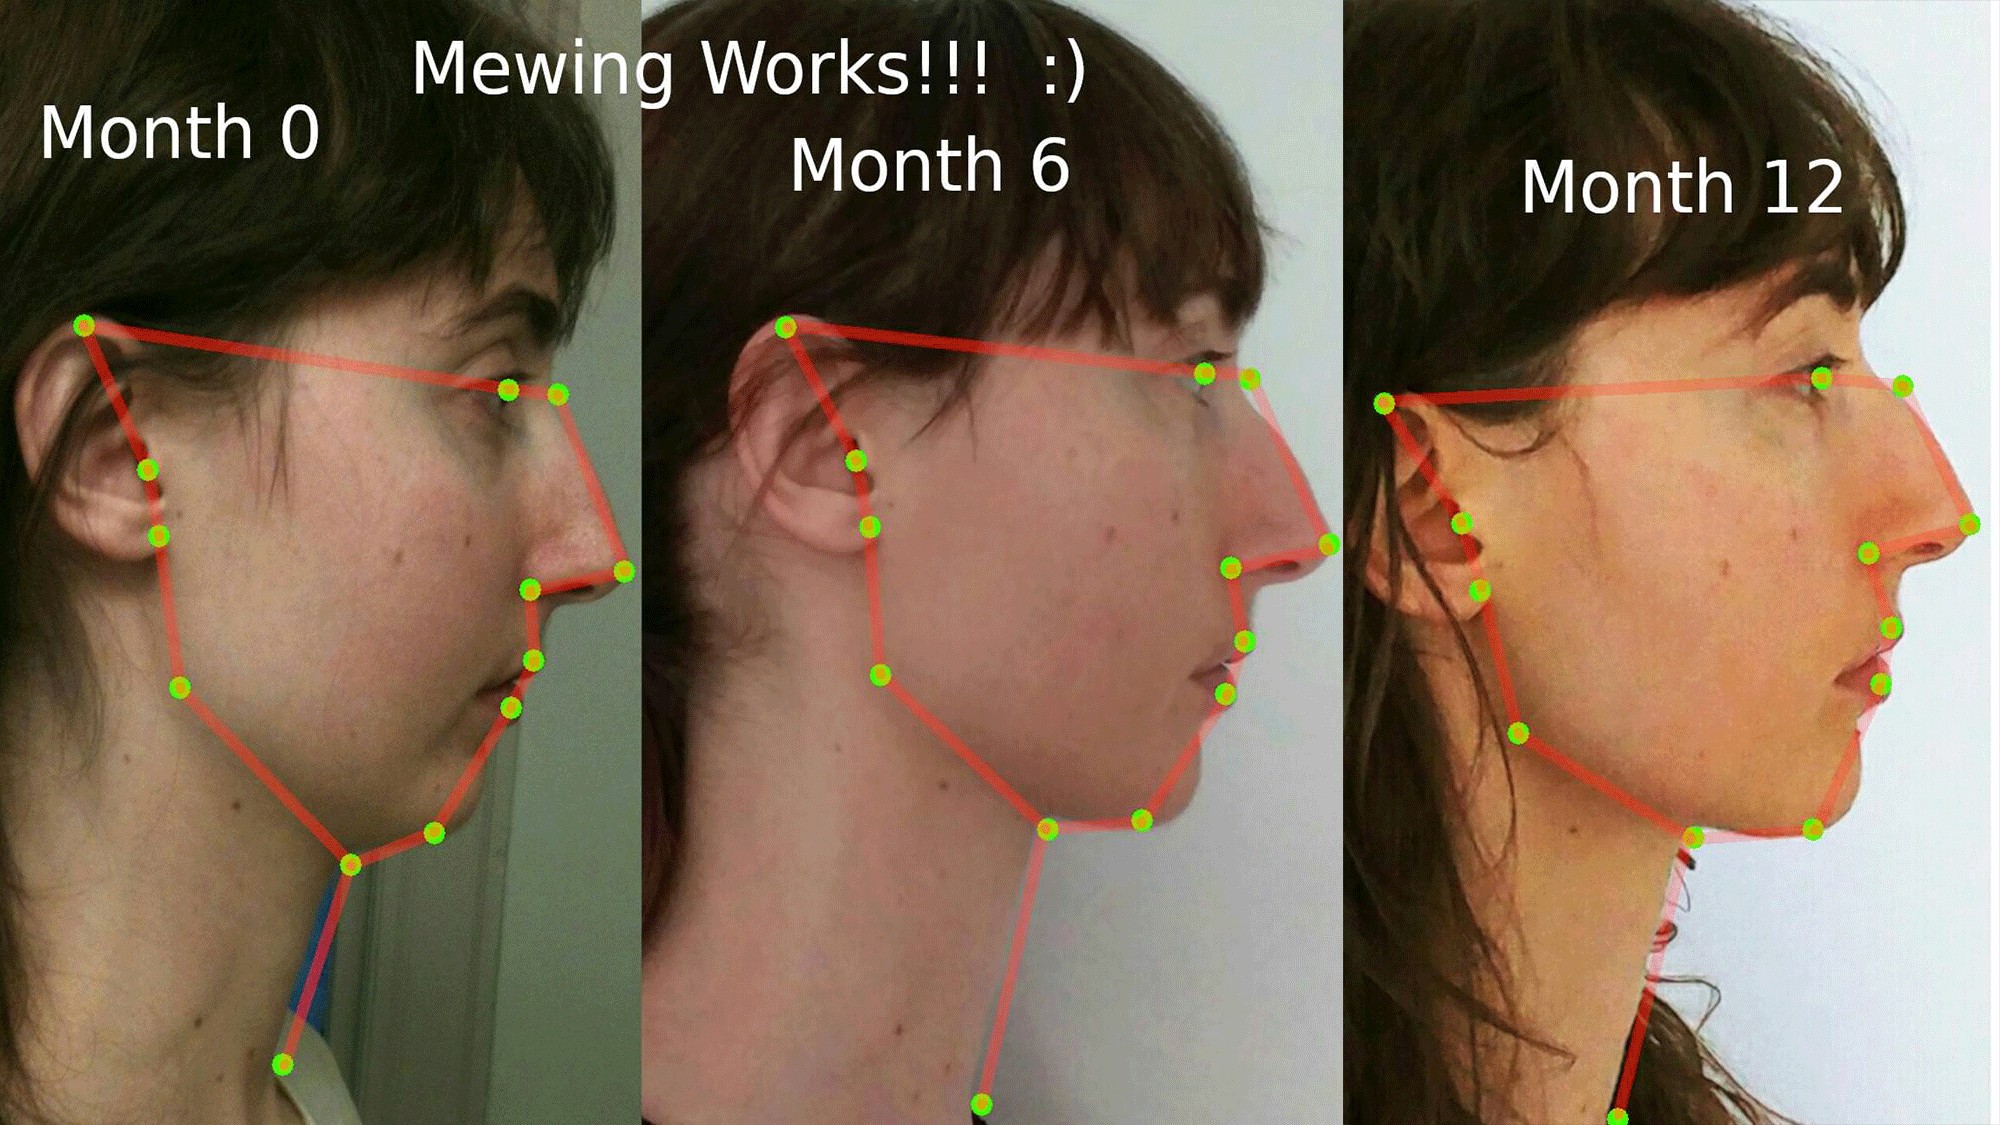 Mewing: a nova tendência do TikTok que promete afinar nosso rosto